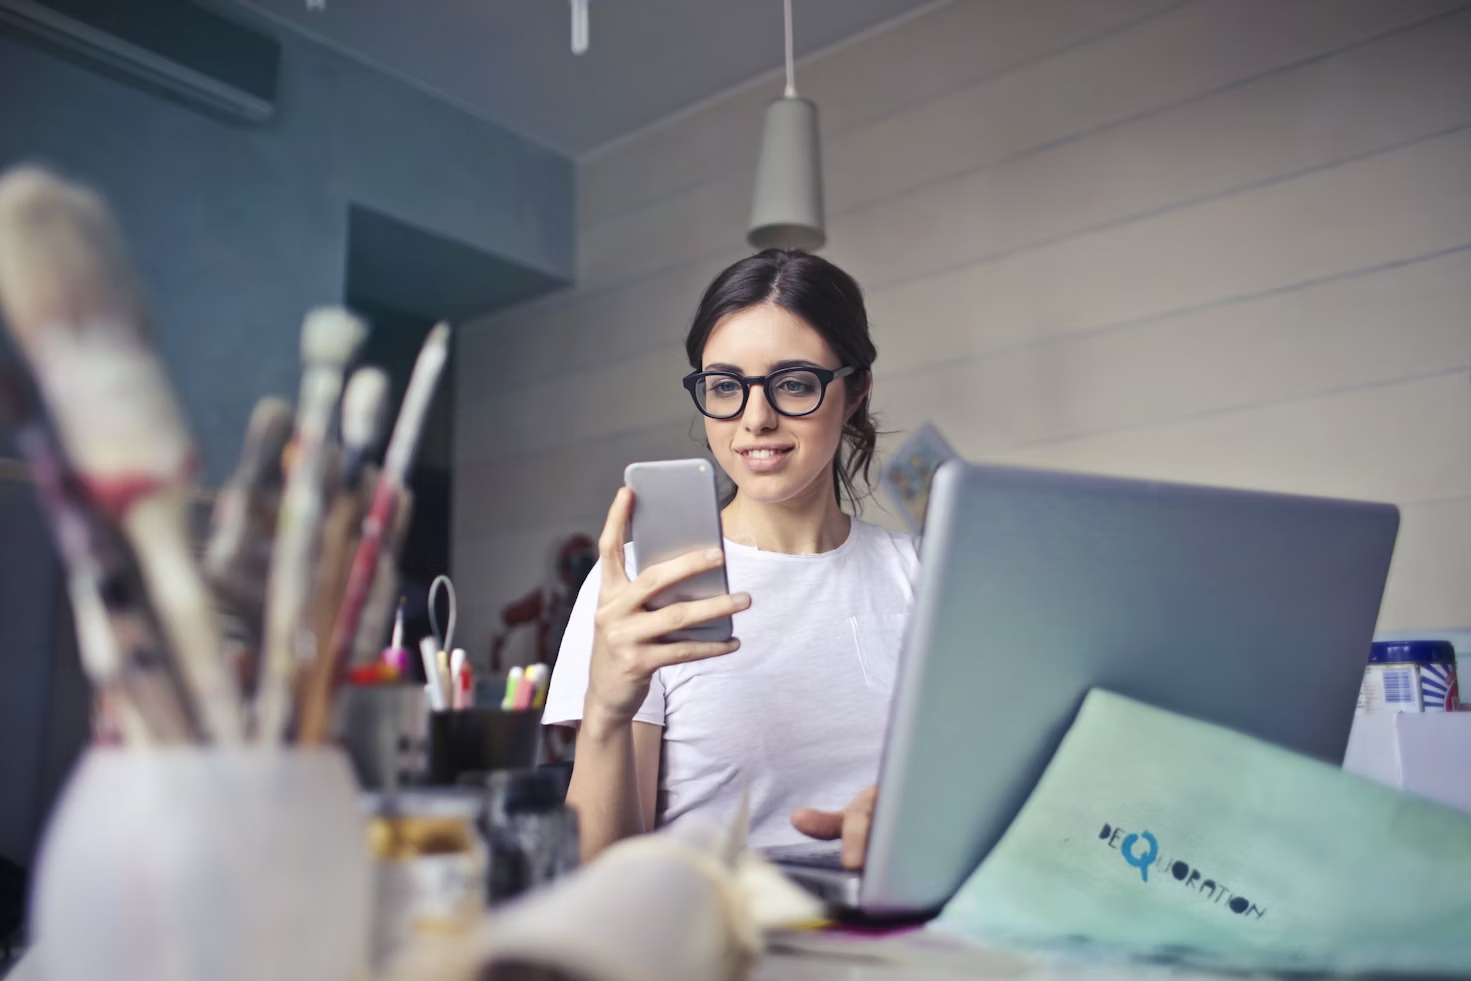 Femme en T-Shirt blanc et portant des lunettes assise devant un ordinateur portable et regardant son téléphone